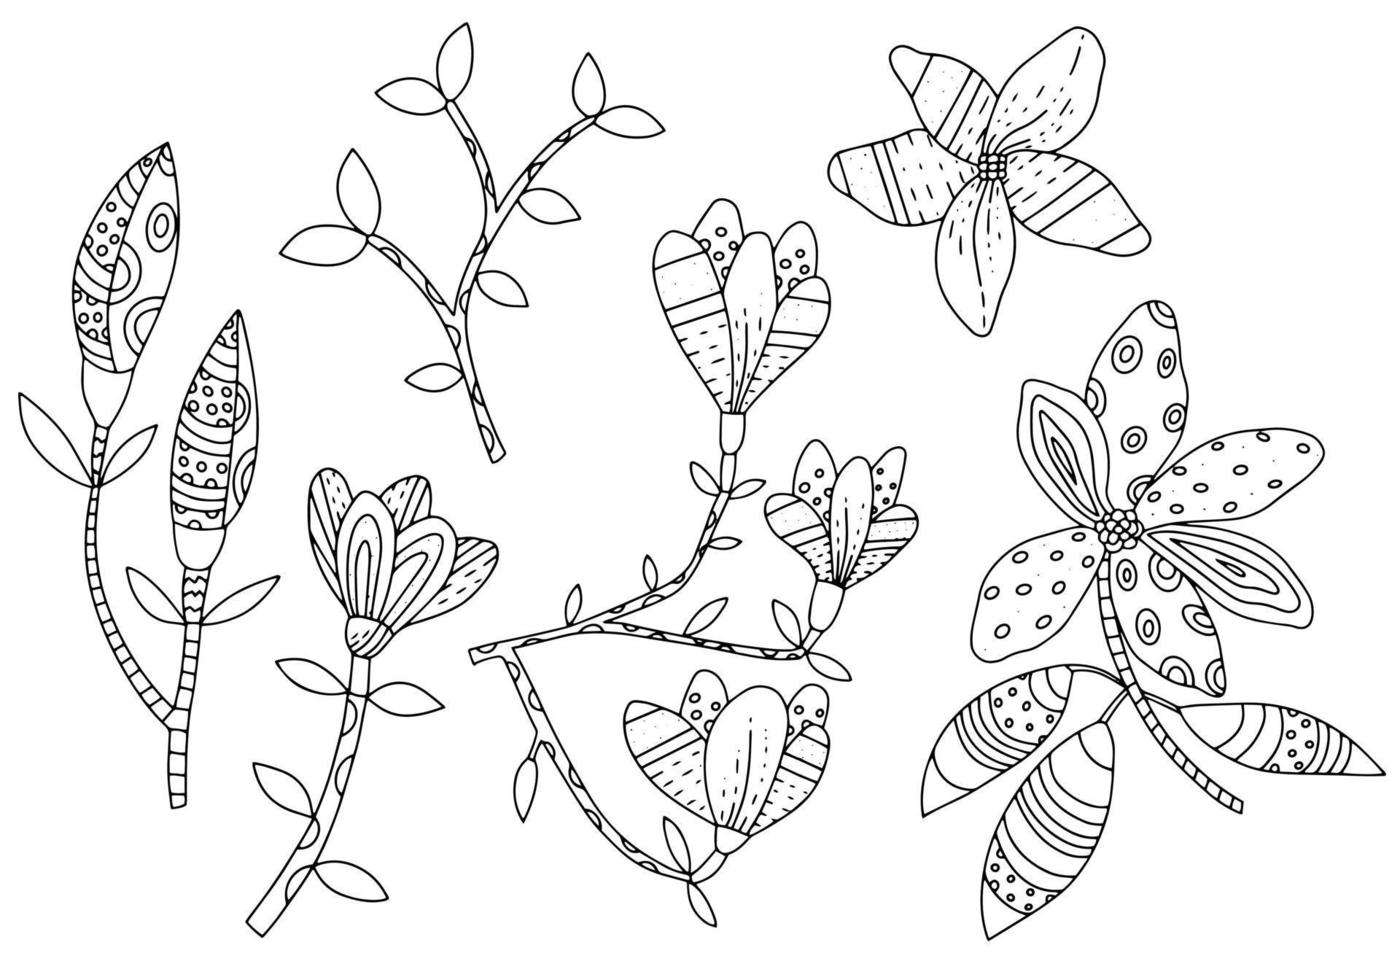 flores de magnolia en ramas con hojas. conjunto de elementos gráficos botánicos en estilo étnico. plantas estilizadas dibujadas a mano vector